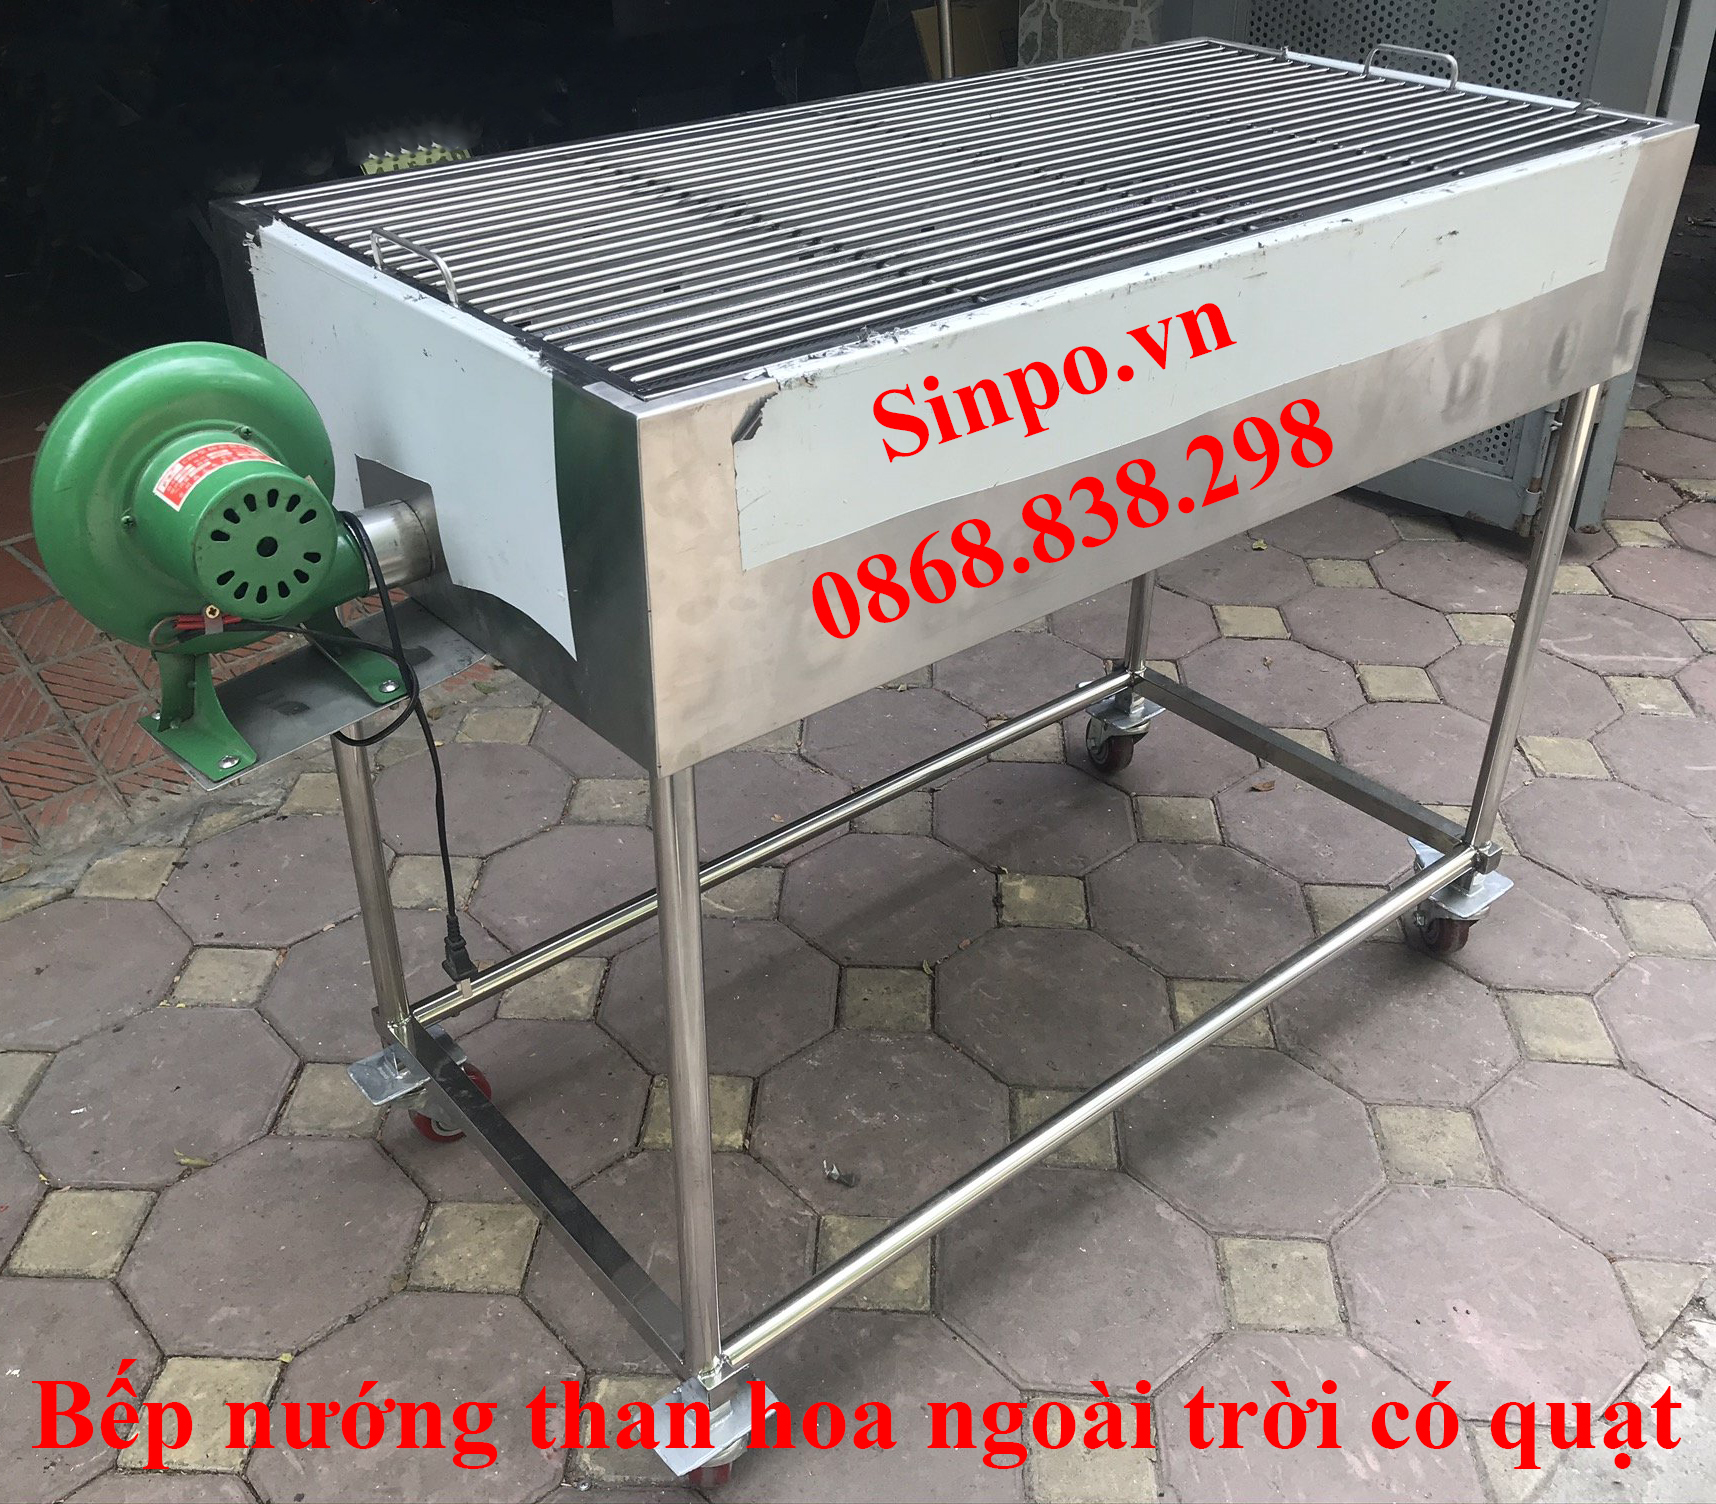 Cung cấp bếp nướng than hoa ngoài trời có quạt thổi than tại Bắc Ninh, Bắc Giang, Hà Nam, Nam Định , Quảng Ninh